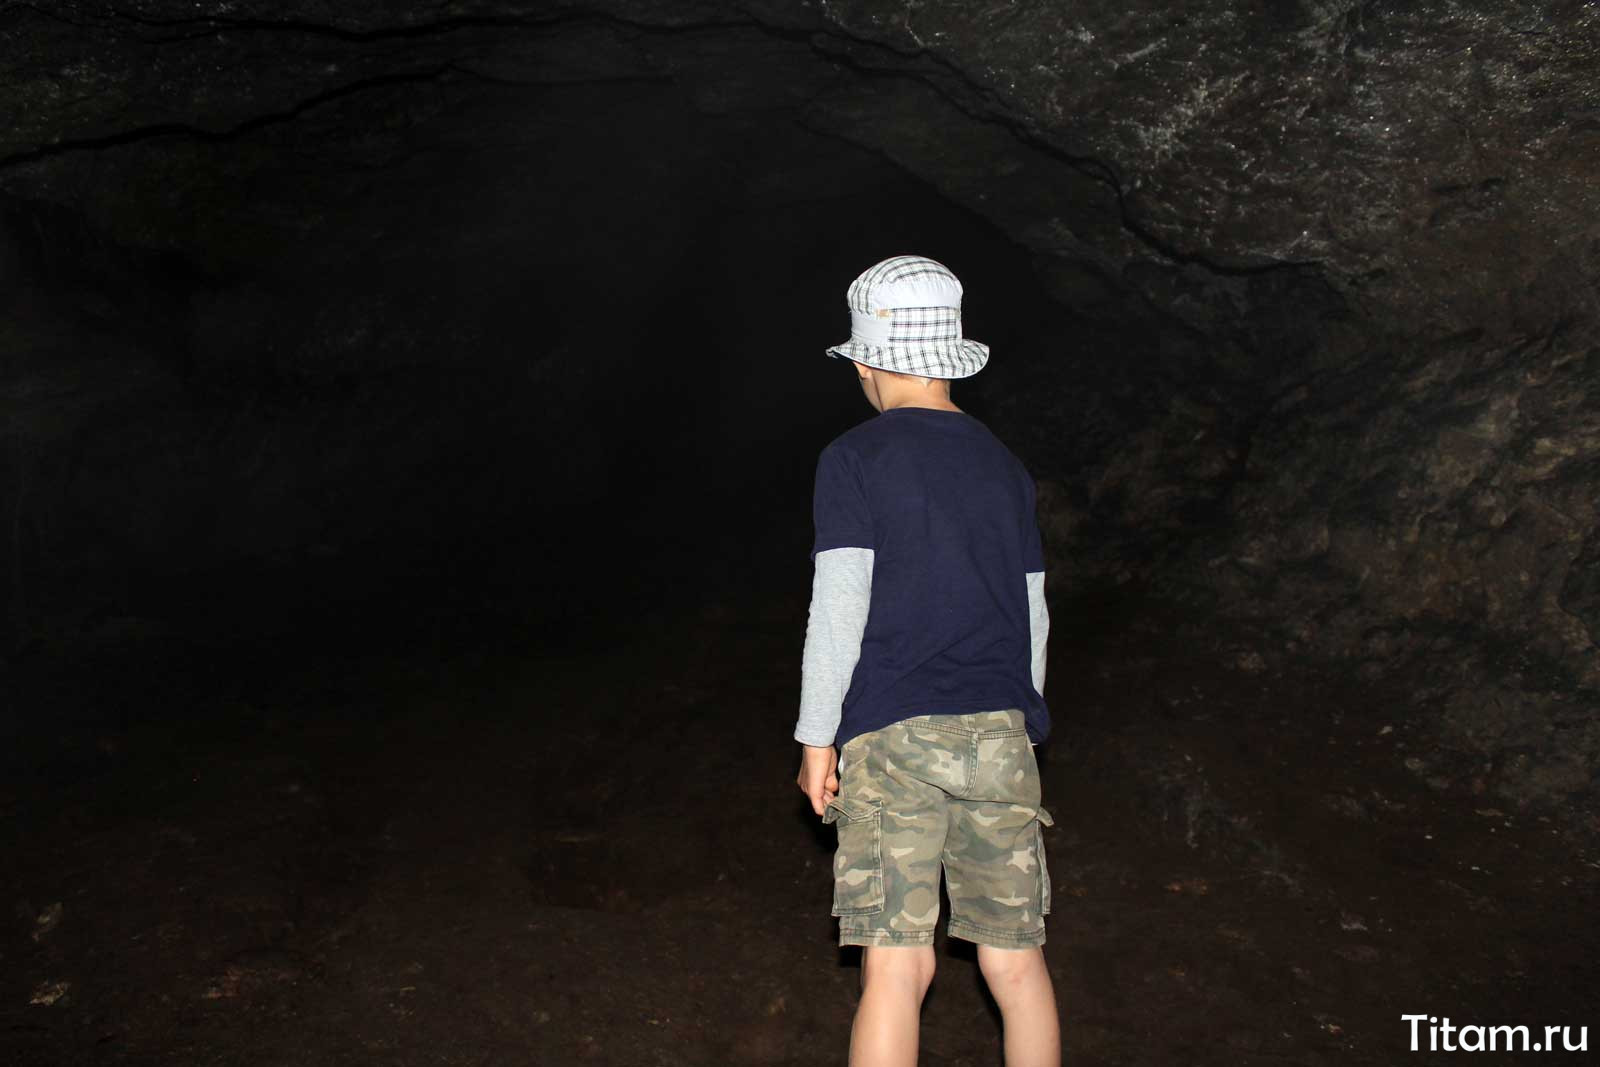 Пещера Даховская